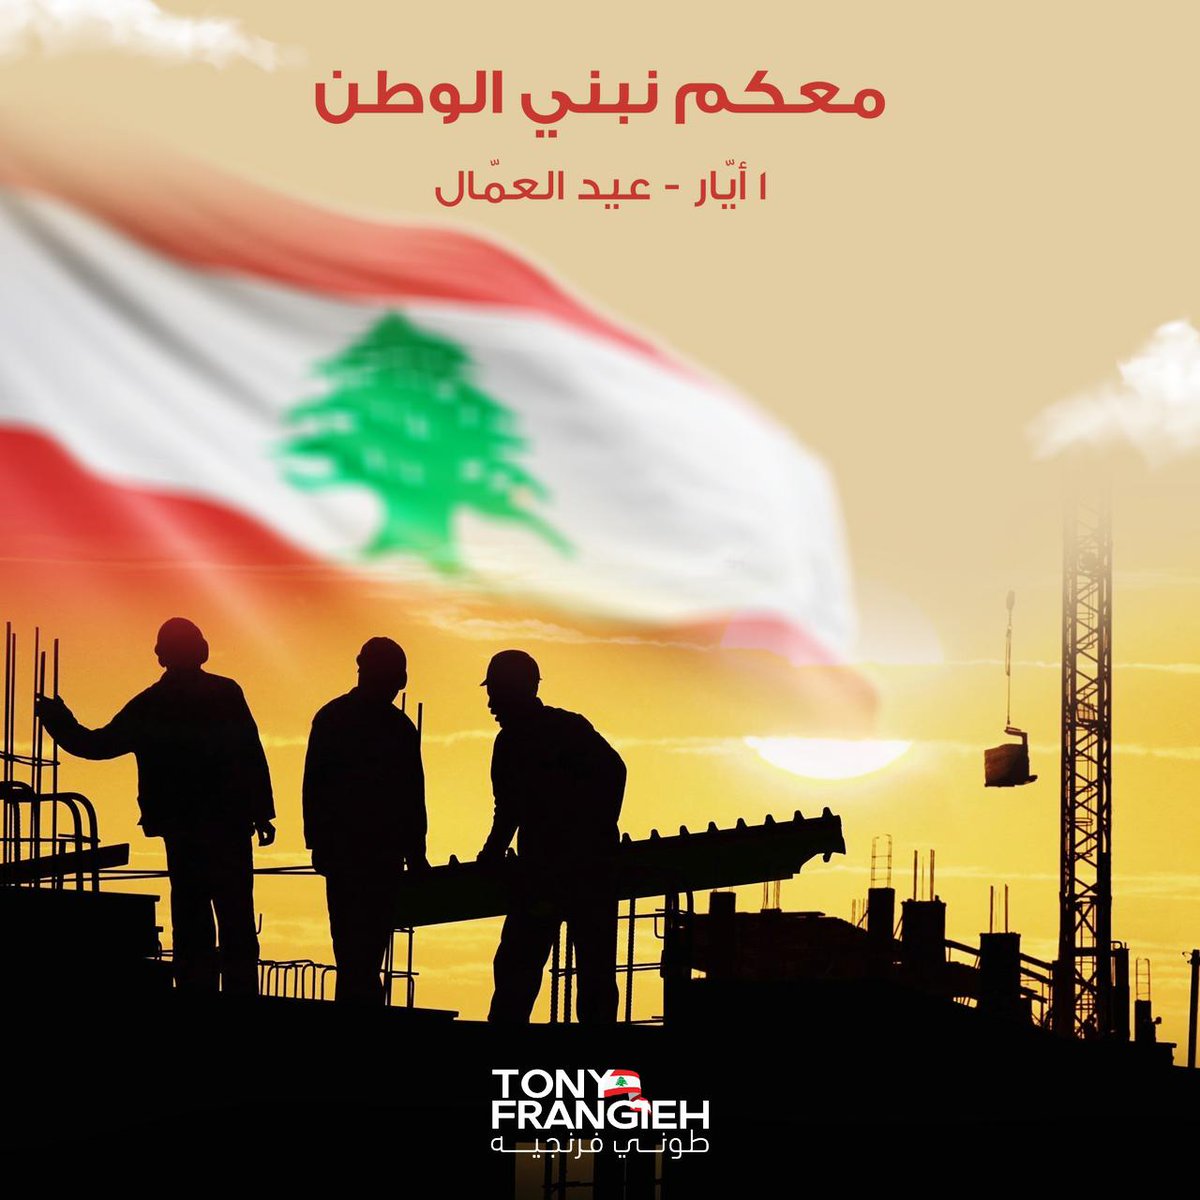 التحية اليوم هي لكلّ عاملات وعمّال لبنان تحية لصمودكم وتعبكم تحية لعدم إستسلامكم. معكم سنبني وطناً يحفظ حقوقكم ويصون مستقبل أولادكم. #عيد_العمال